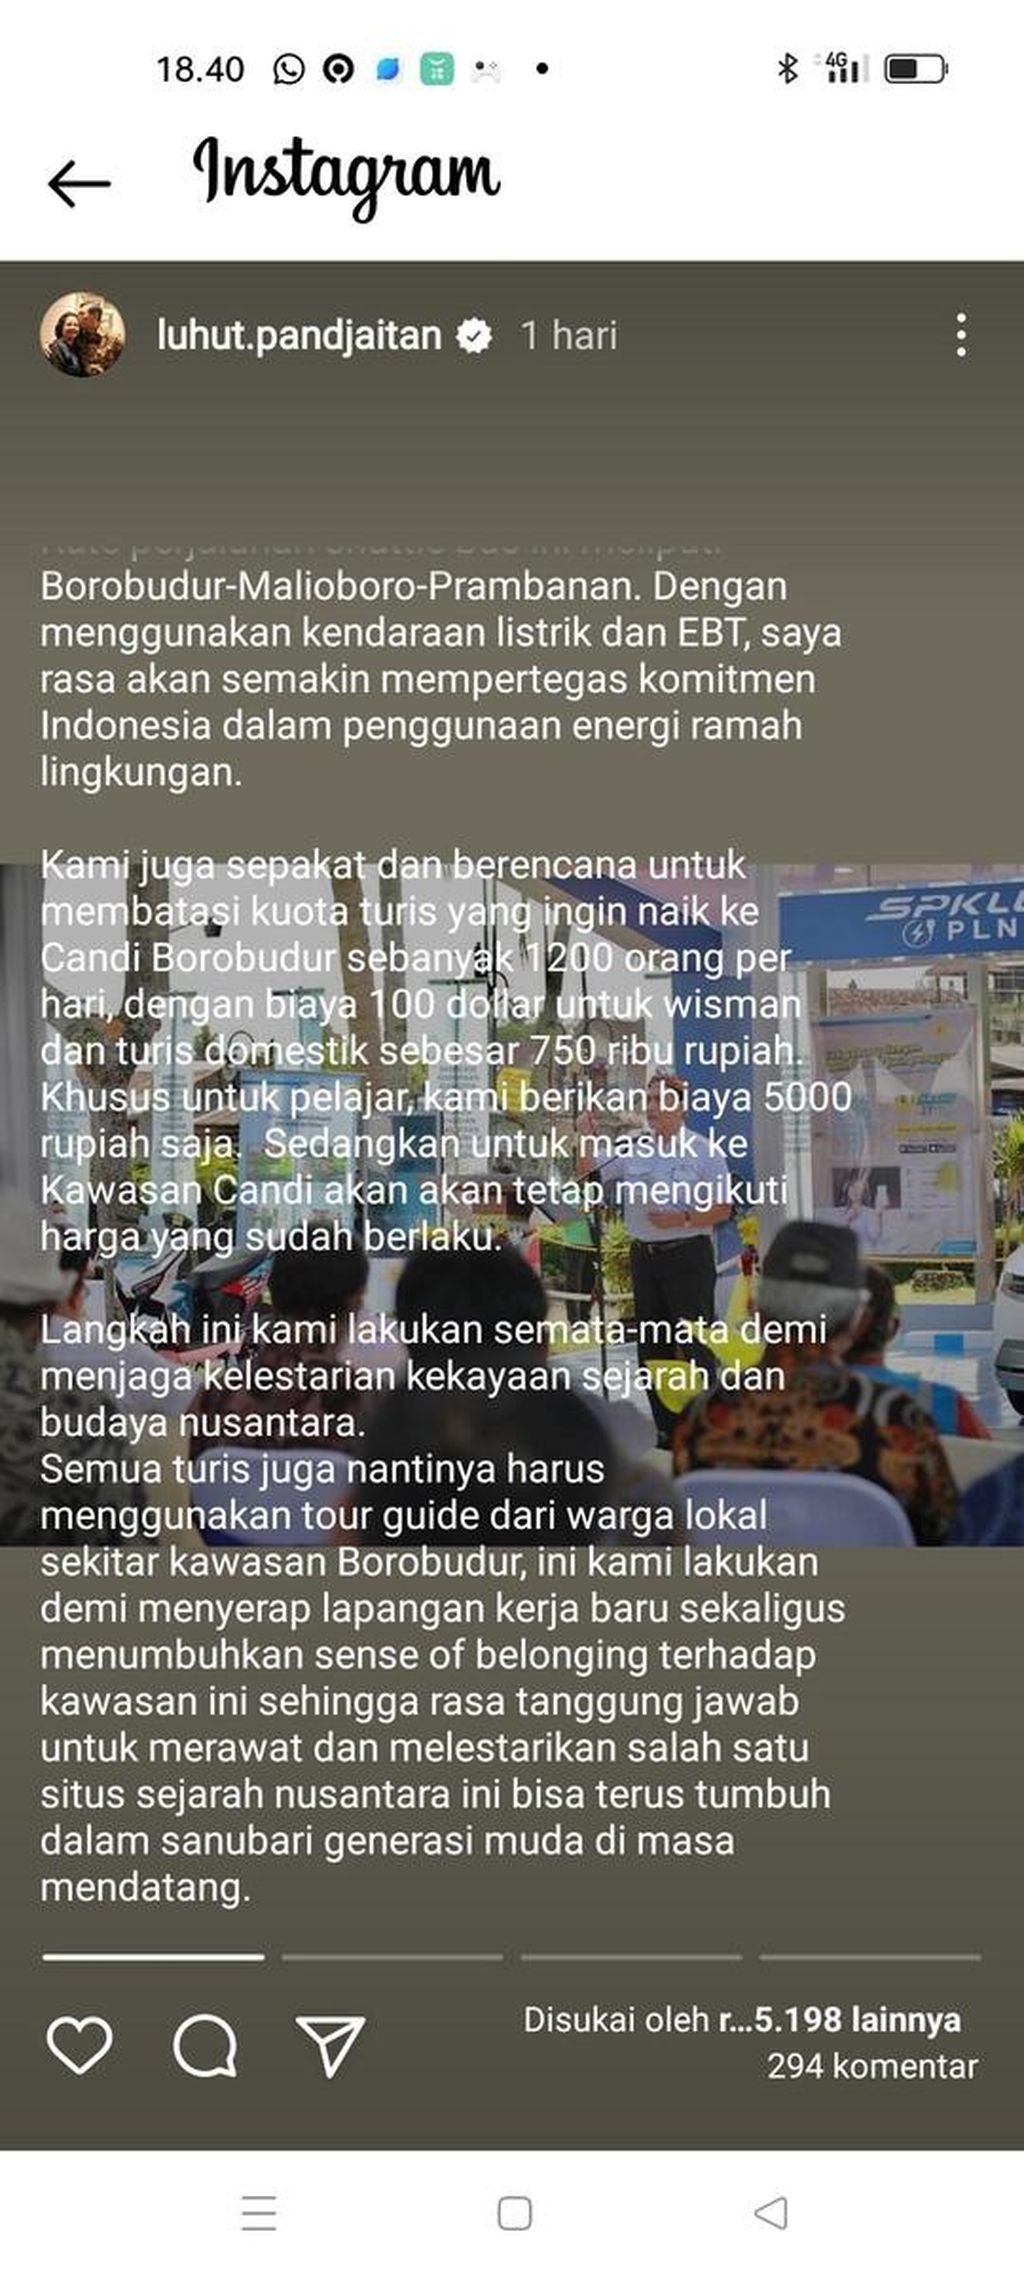 Tangkapan layar dari media sosial Instagram tentang unggahan status Menteri Koordinator Bidang Kemaritiman dan Investasi Luhut Binsar Pandjaitan, yang menerangkan tentang rencana kenaikan harga tiket Candi Borobudur.